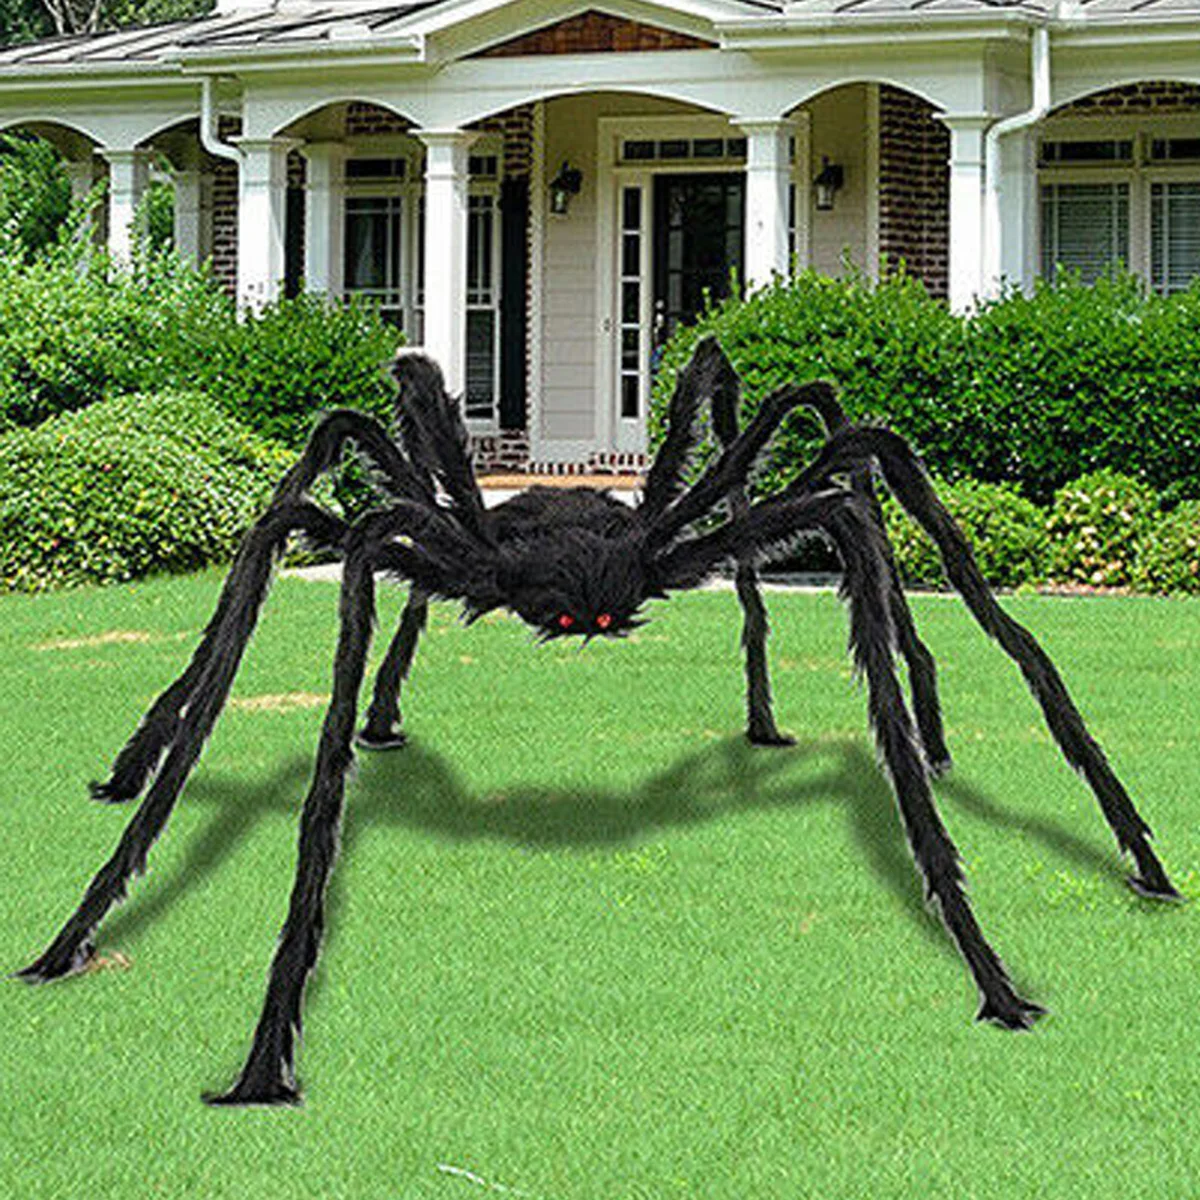 Halloween Decoration Prop Indoor Outdoor Big Spider Black Giant Haunted House 